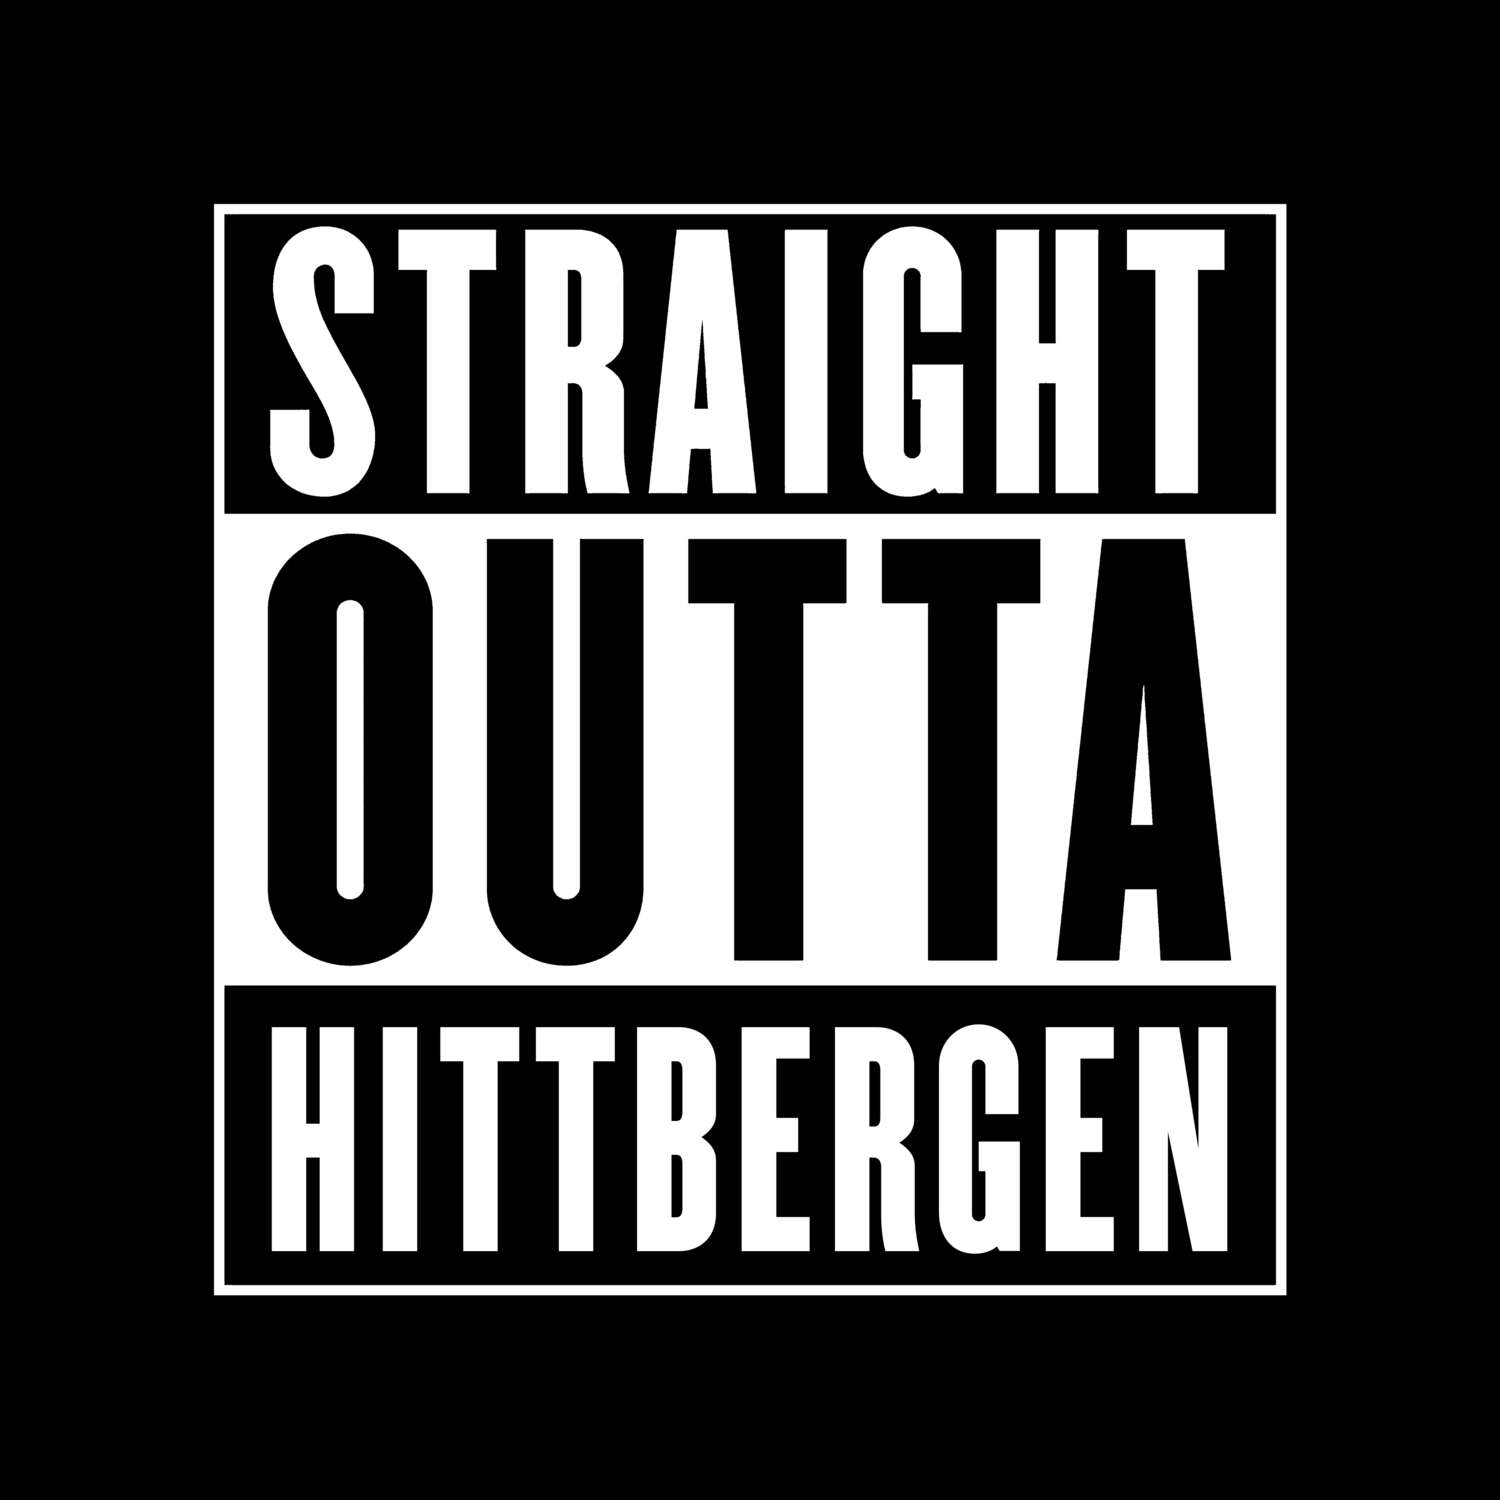 Hittbergen T-Shirt »Straight Outta«